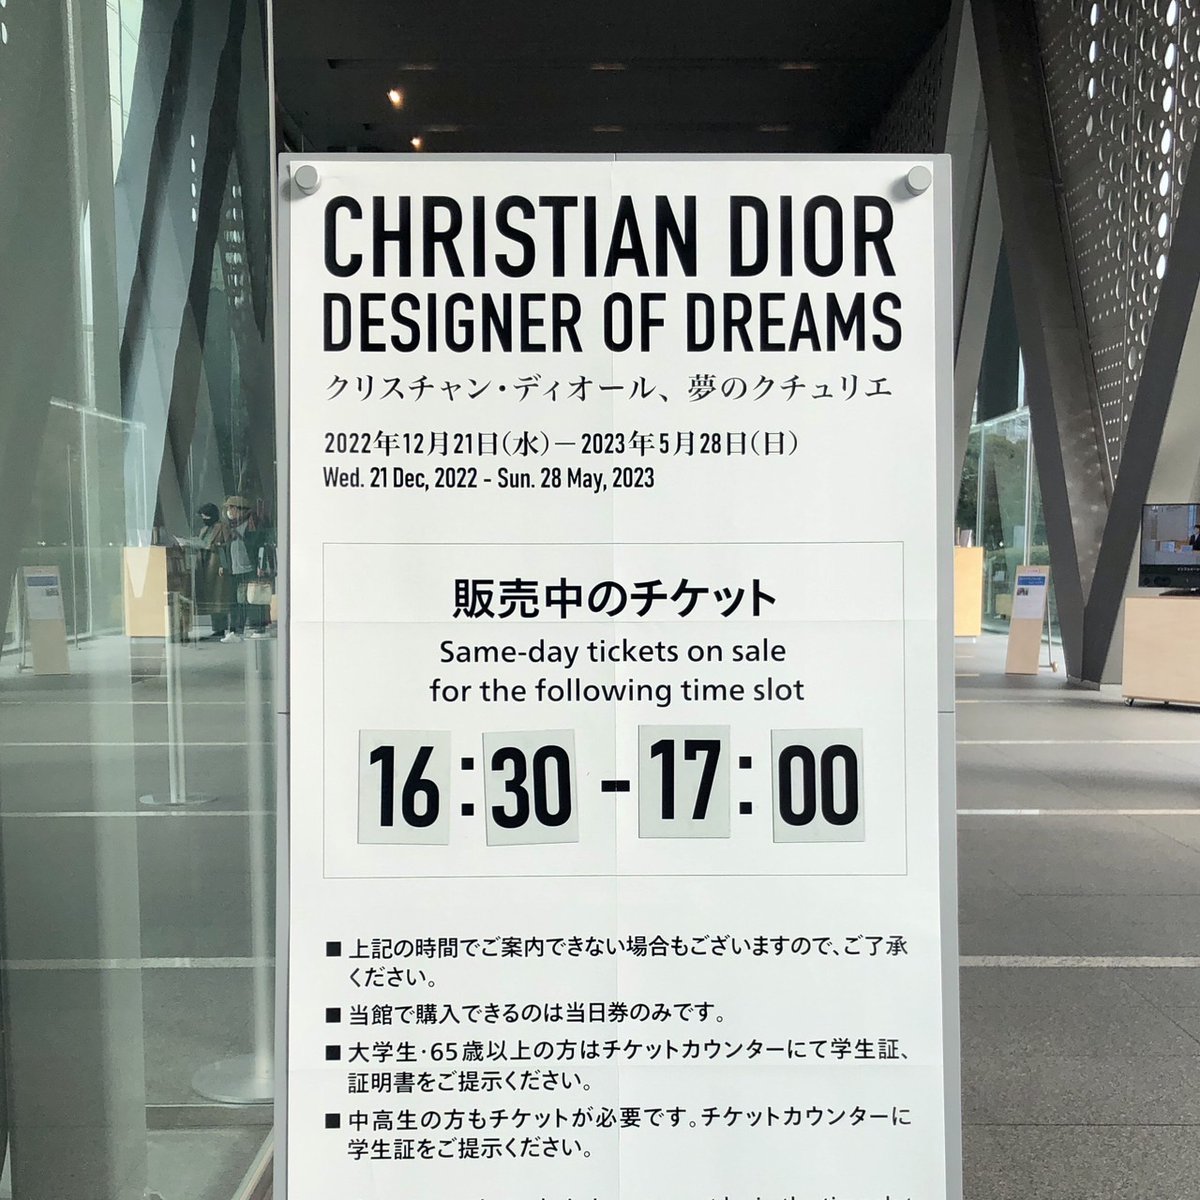 エッセンシャルズ] 東京都現代美術館 MOT パスポート Dior展